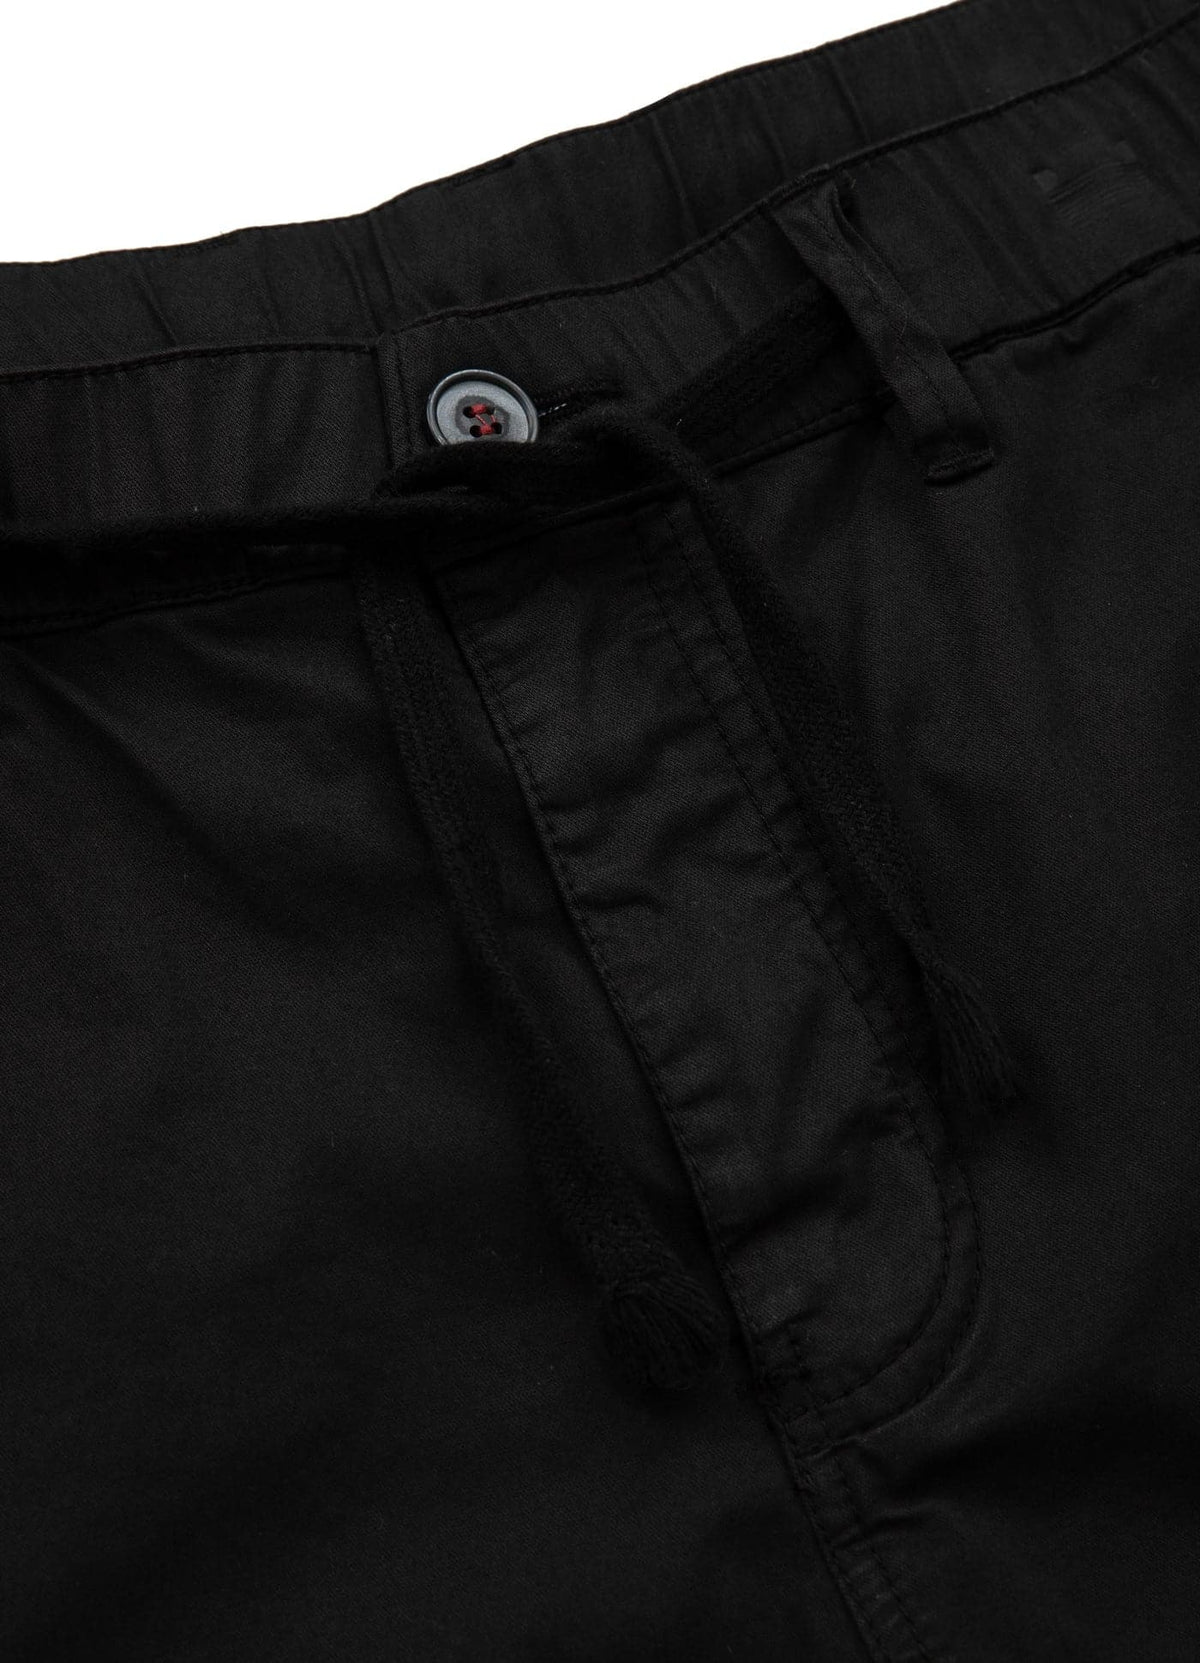 SKYLINE Black Cargo Shorts